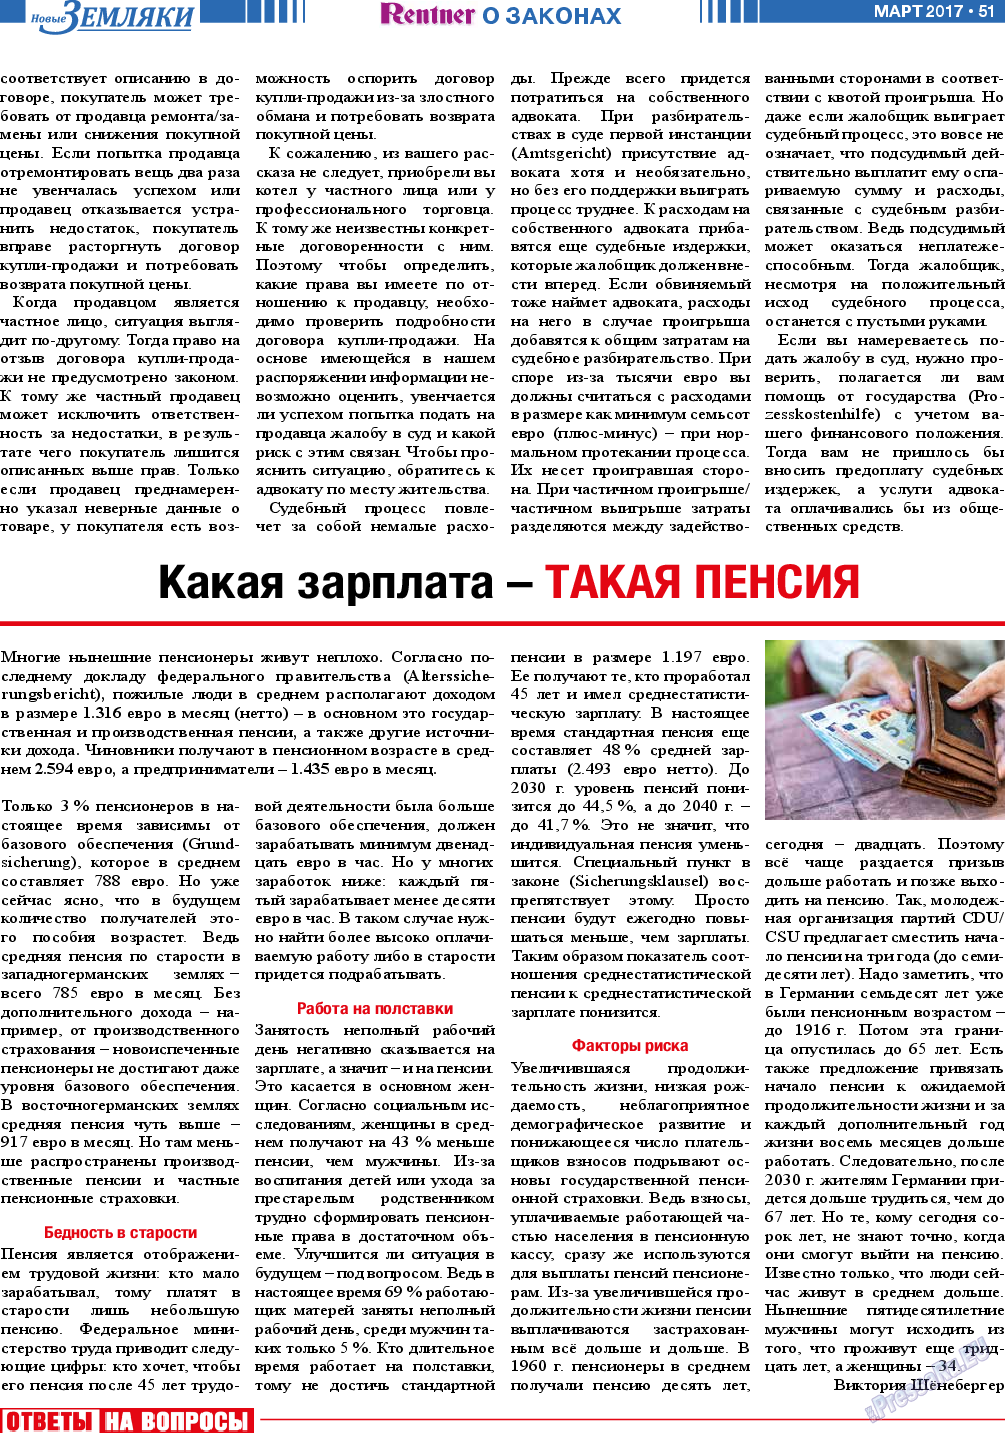 Новые Земляки, газета. 2017 №3 стр.51